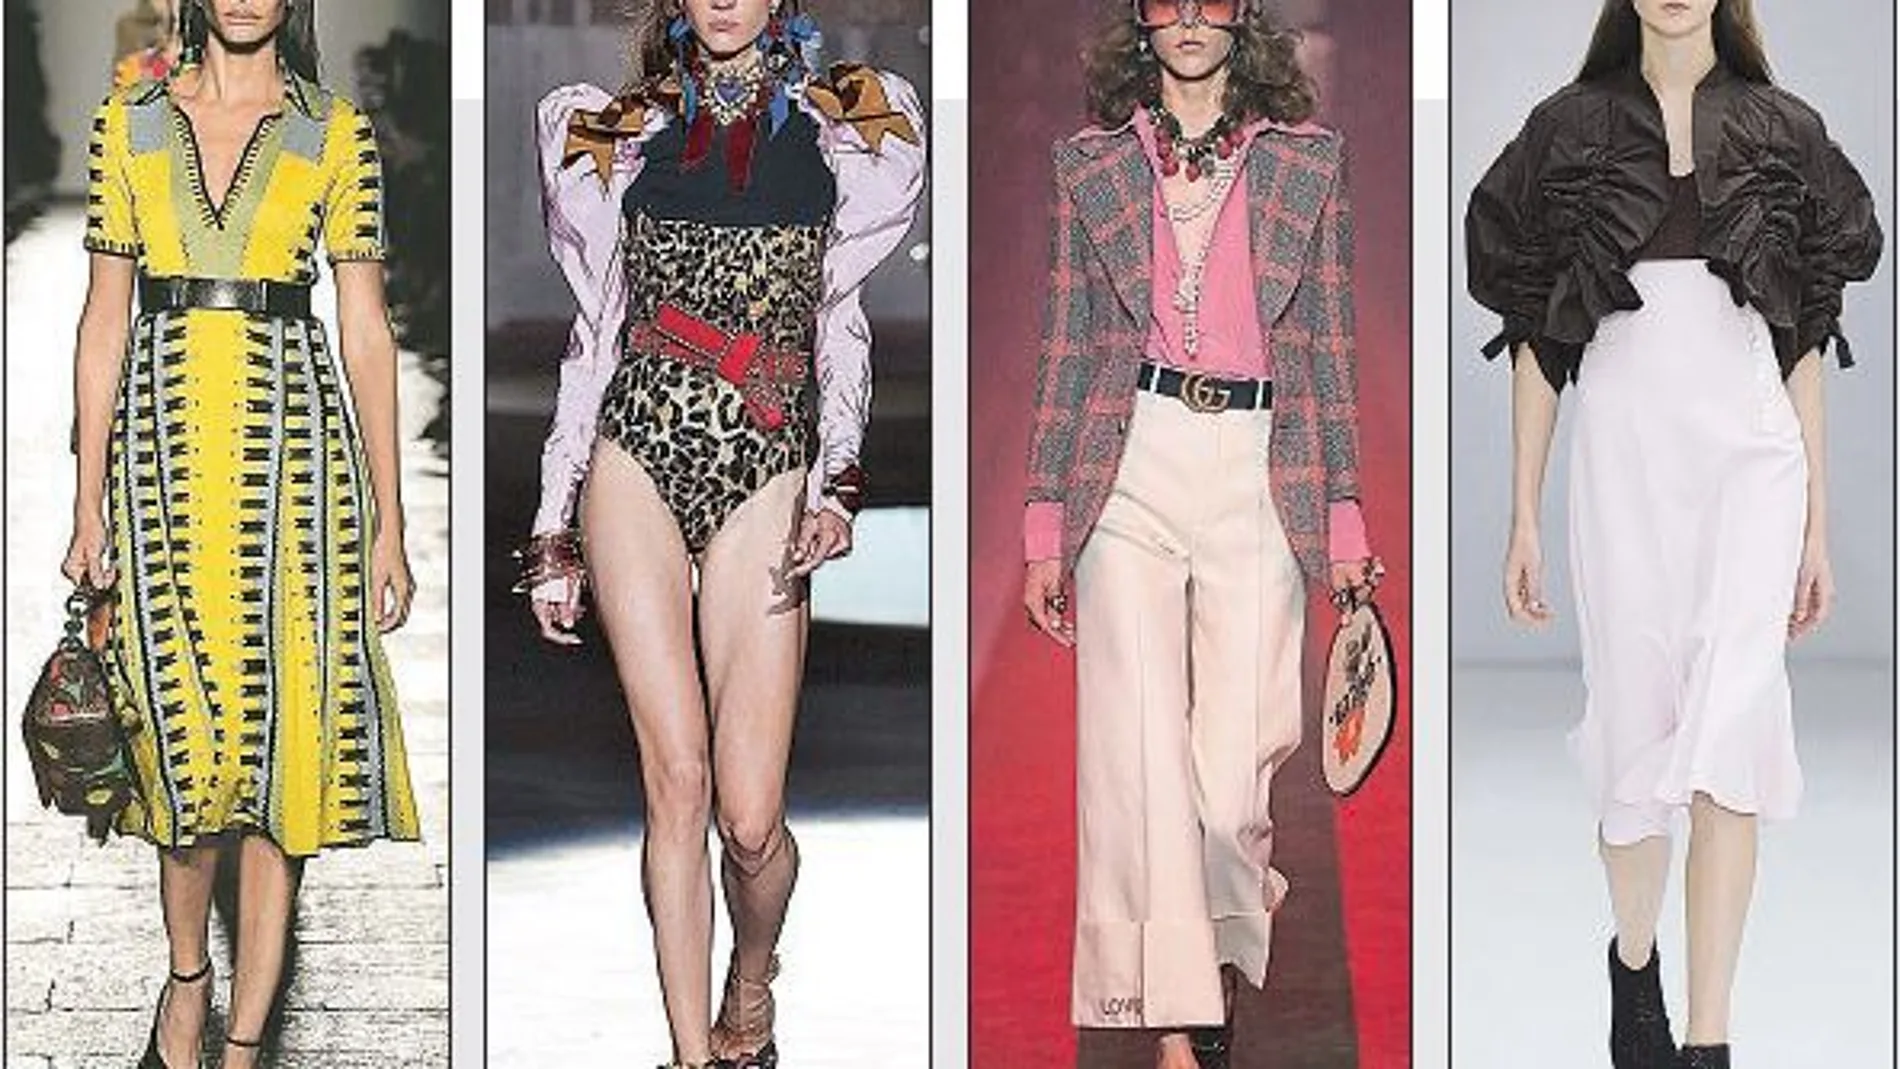 Las propuestas de Veneta, DSquared2, Gucci y Ferragamo (en la imagen, de izquierda a derecha) han destacado en esta edición de Milan Fashion Week y en ellas no han faltado los «looks» ochenteros ni la influencia de estilos musicales como el K-pop